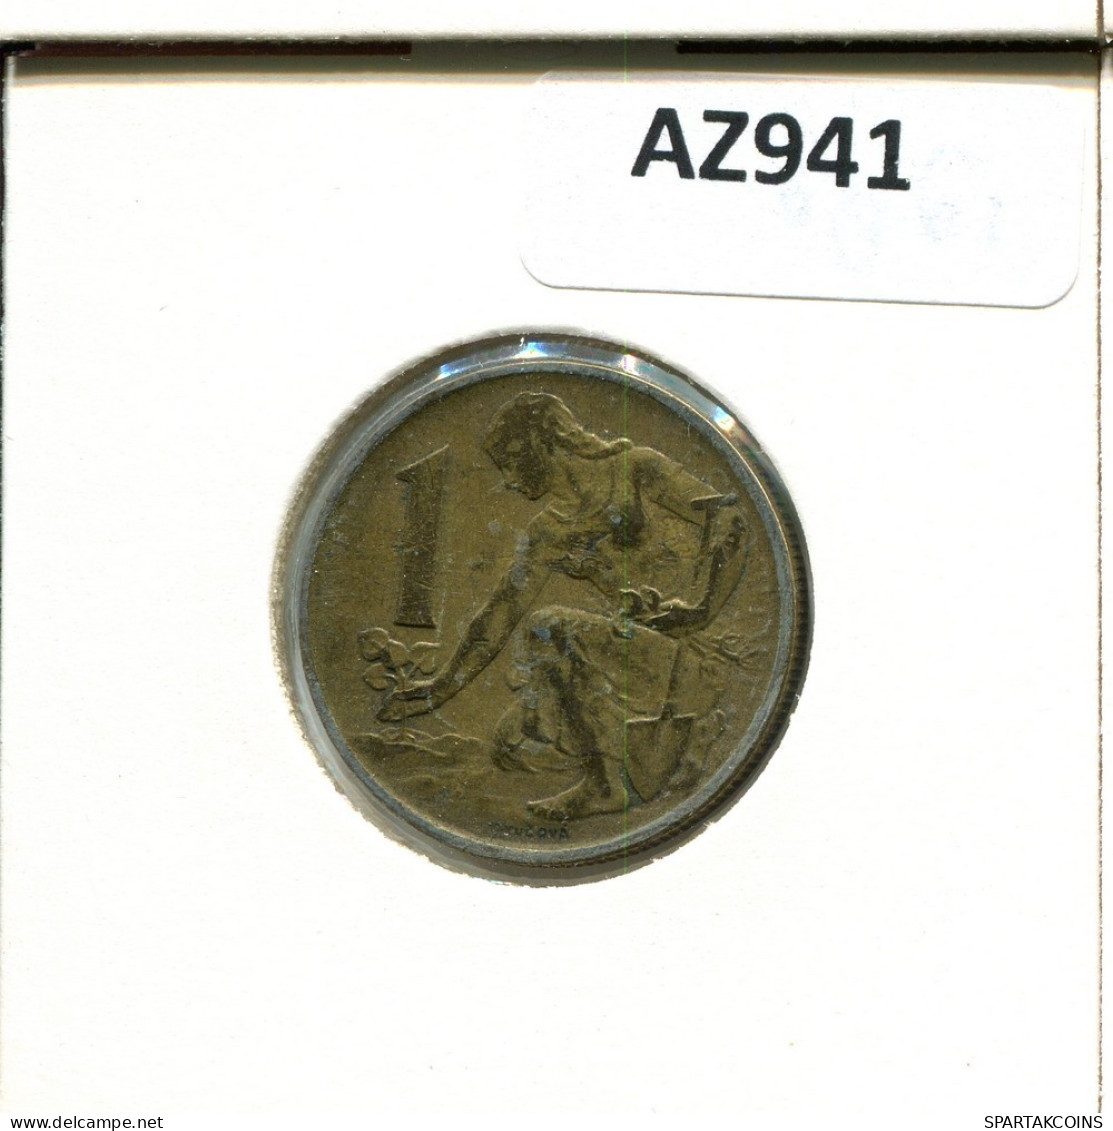 1 KORUNA 1980 CZECHOSLOVAKIA Coin #AZ941.U.A - Tchécoslovaquie